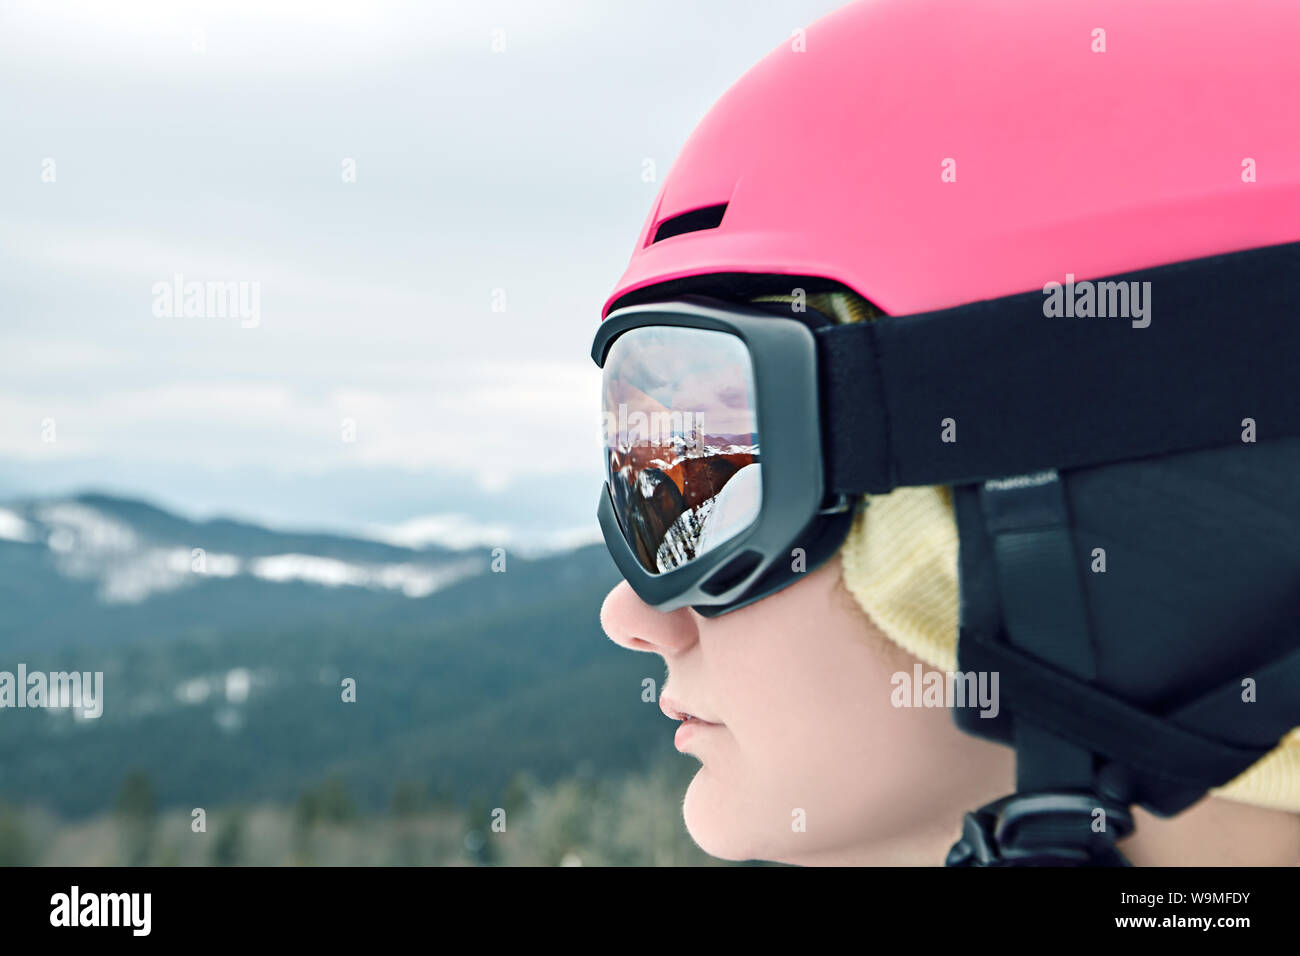 Mujer En Gafas De Esquí, Que Reflejan Las Montañas. Fotos, retratos,  imágenes y fotografía de archivo libres de derecho. Image 34672468